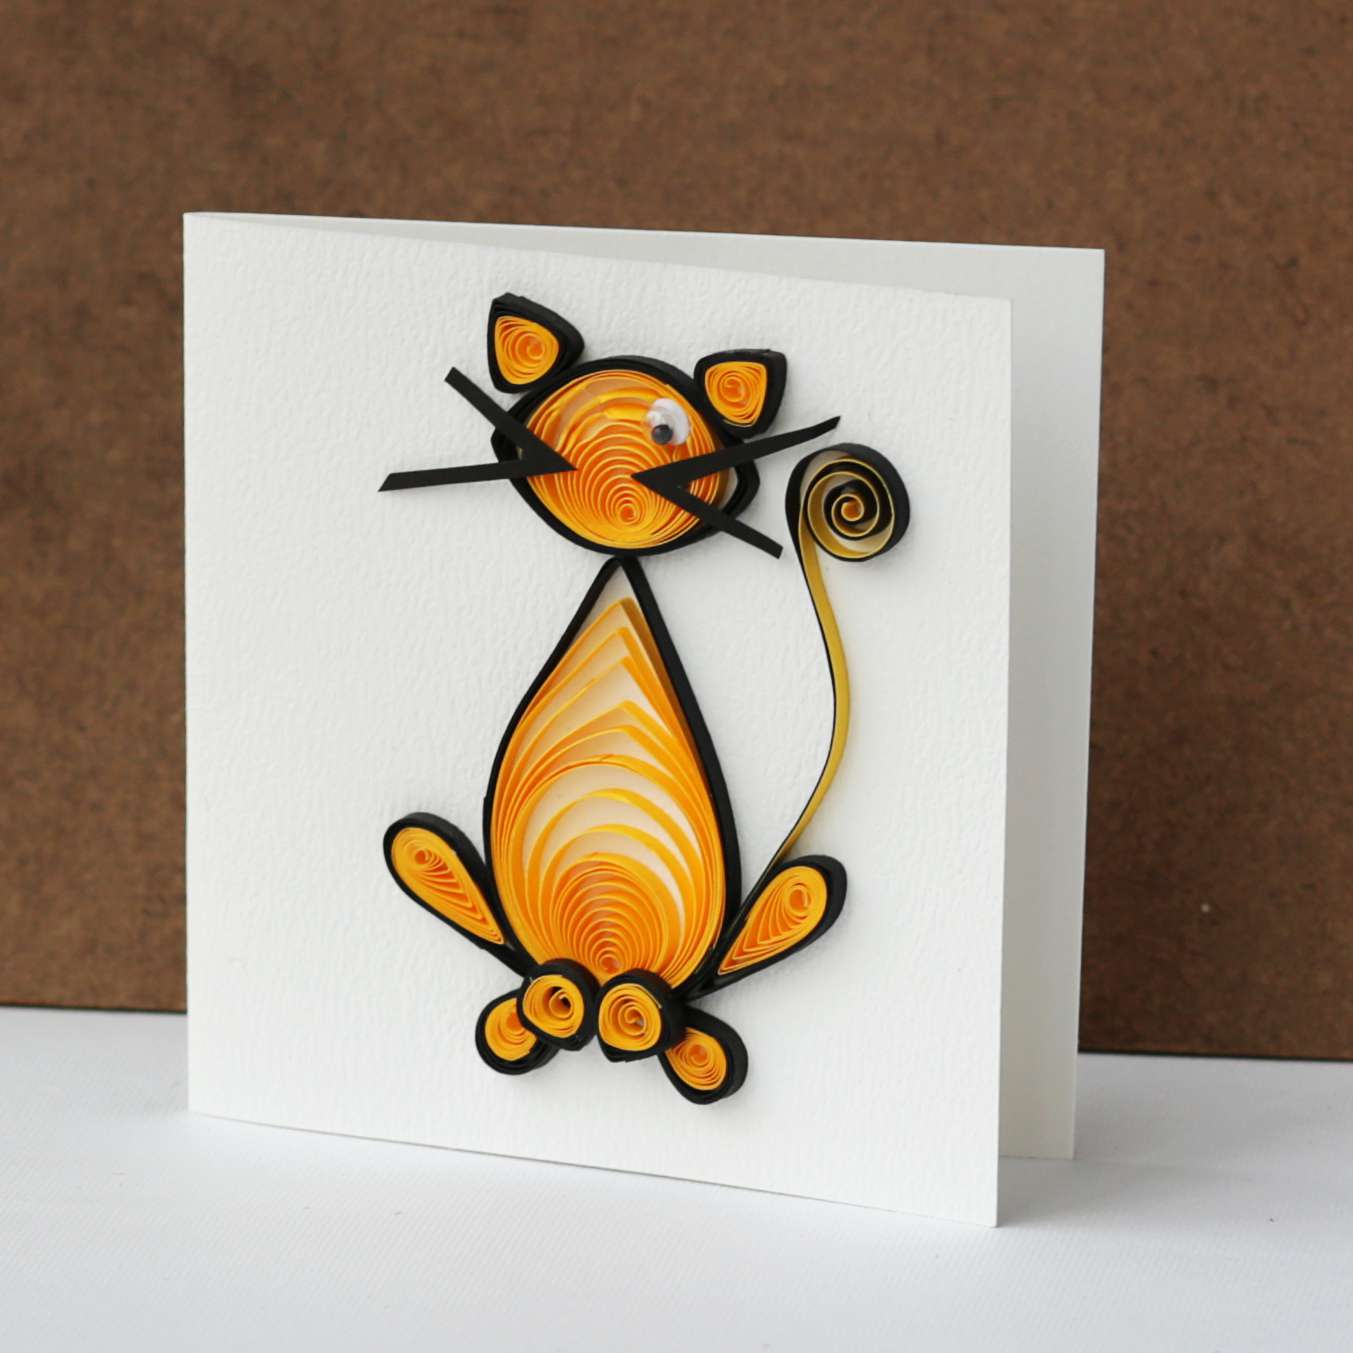 Thiệp handmade cuộn giấy hình chú mèo vàng